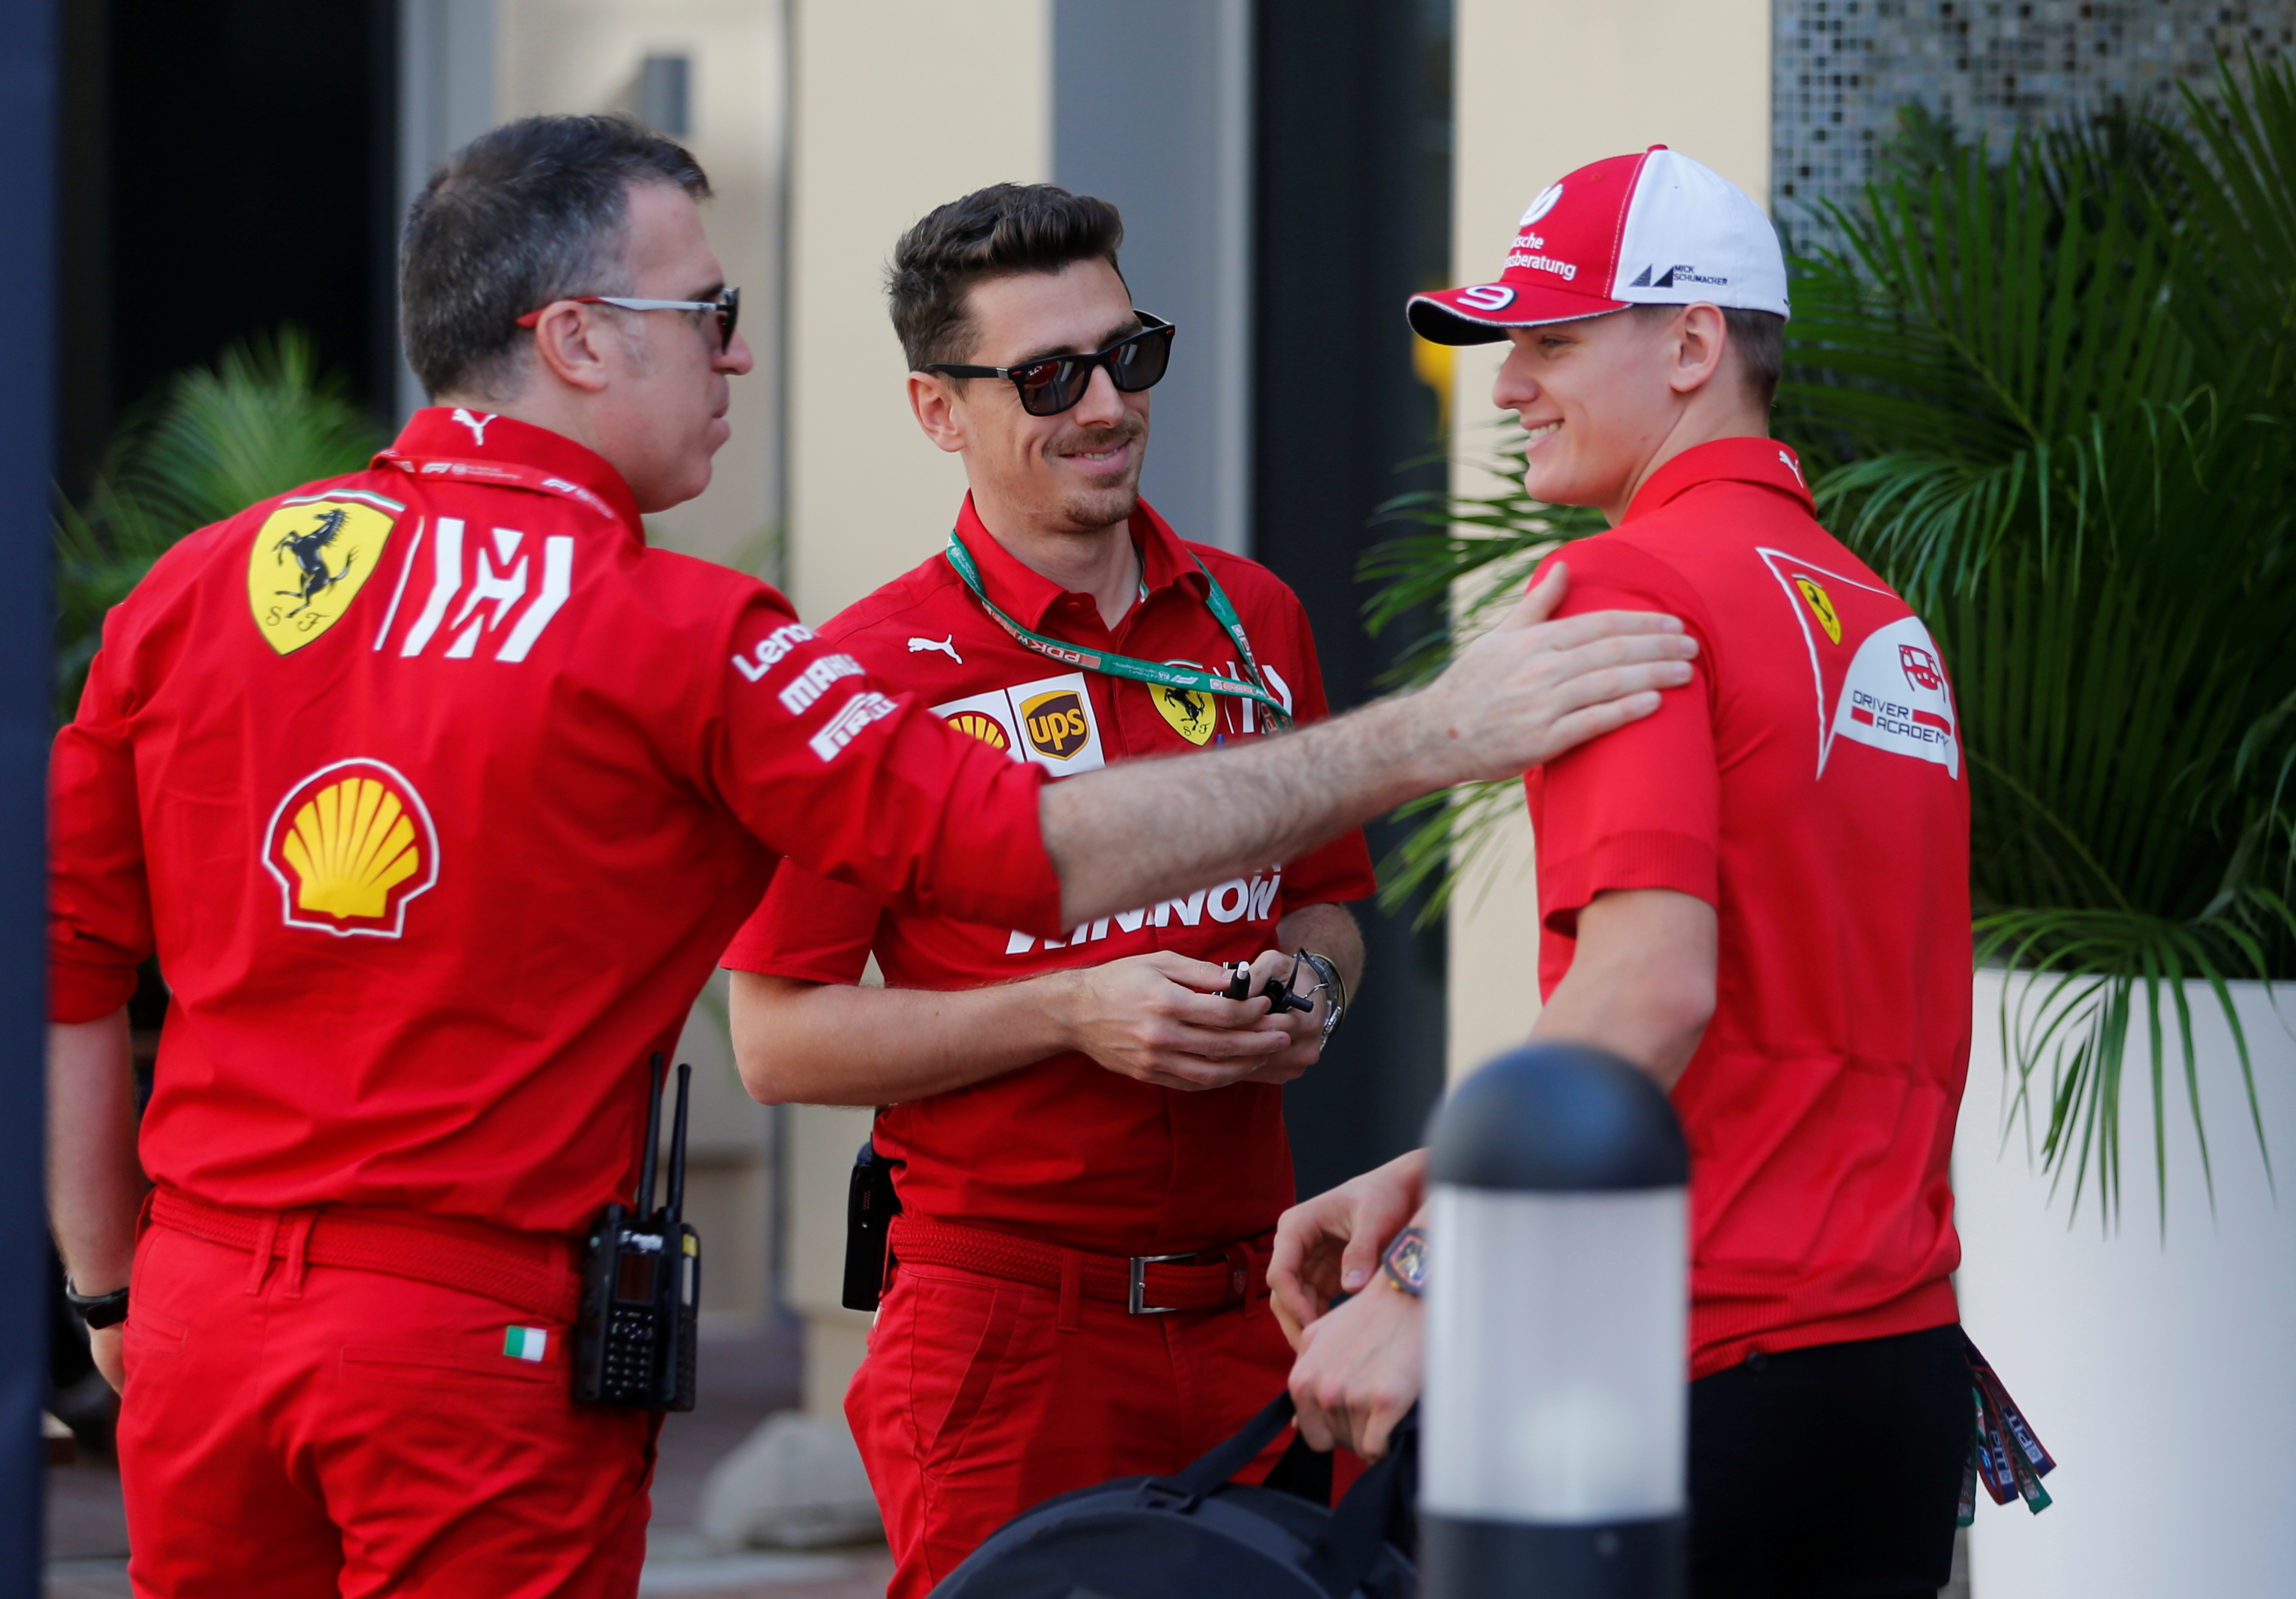 Mick Schumacher es parte de la estructura de formación de Ferrari (Foto: Reuters)